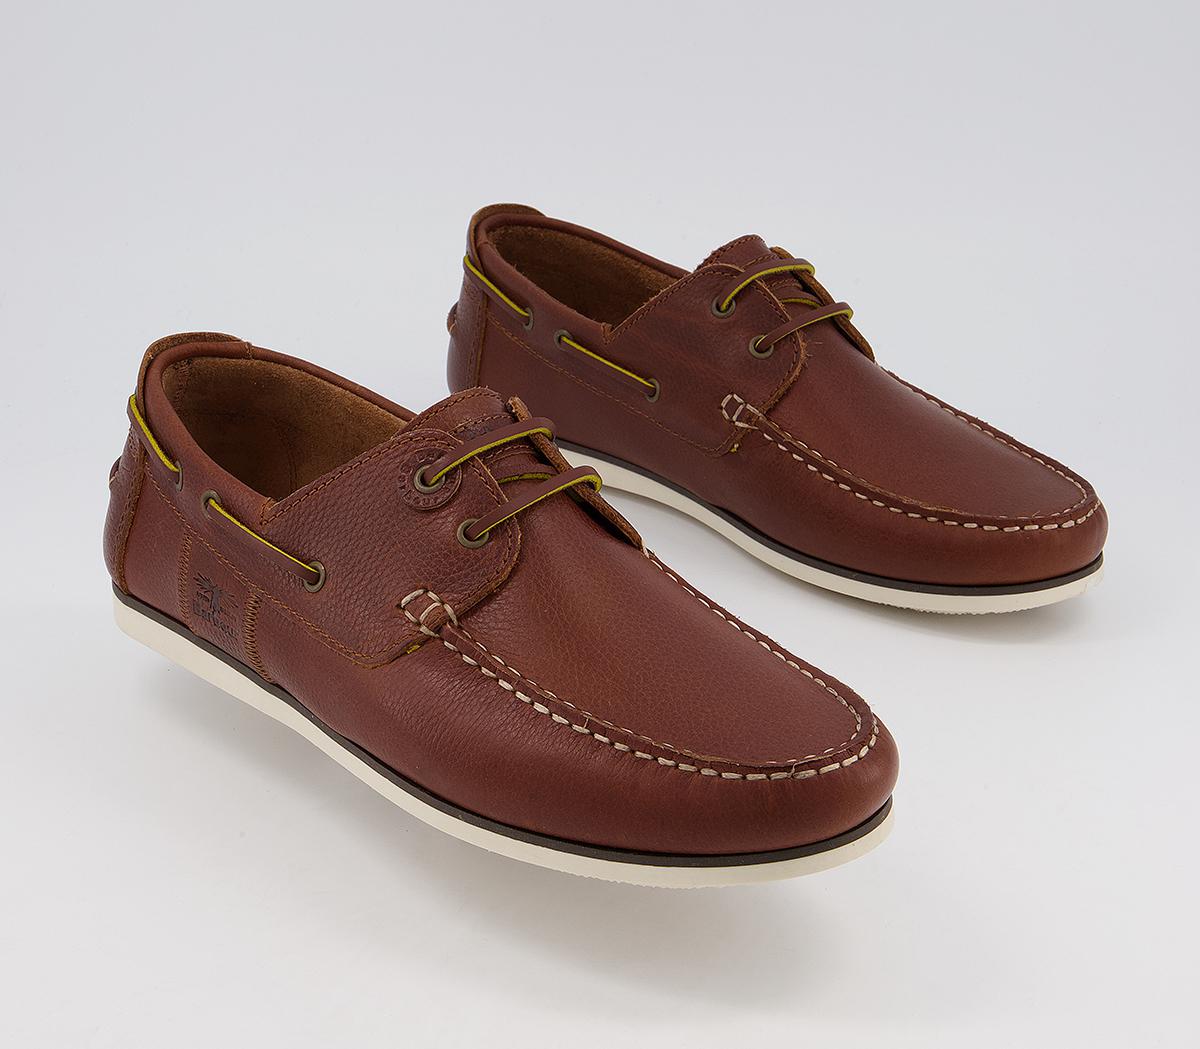 Barbour Capstan Boat Shoes Cognac - Men's Casual Shoes